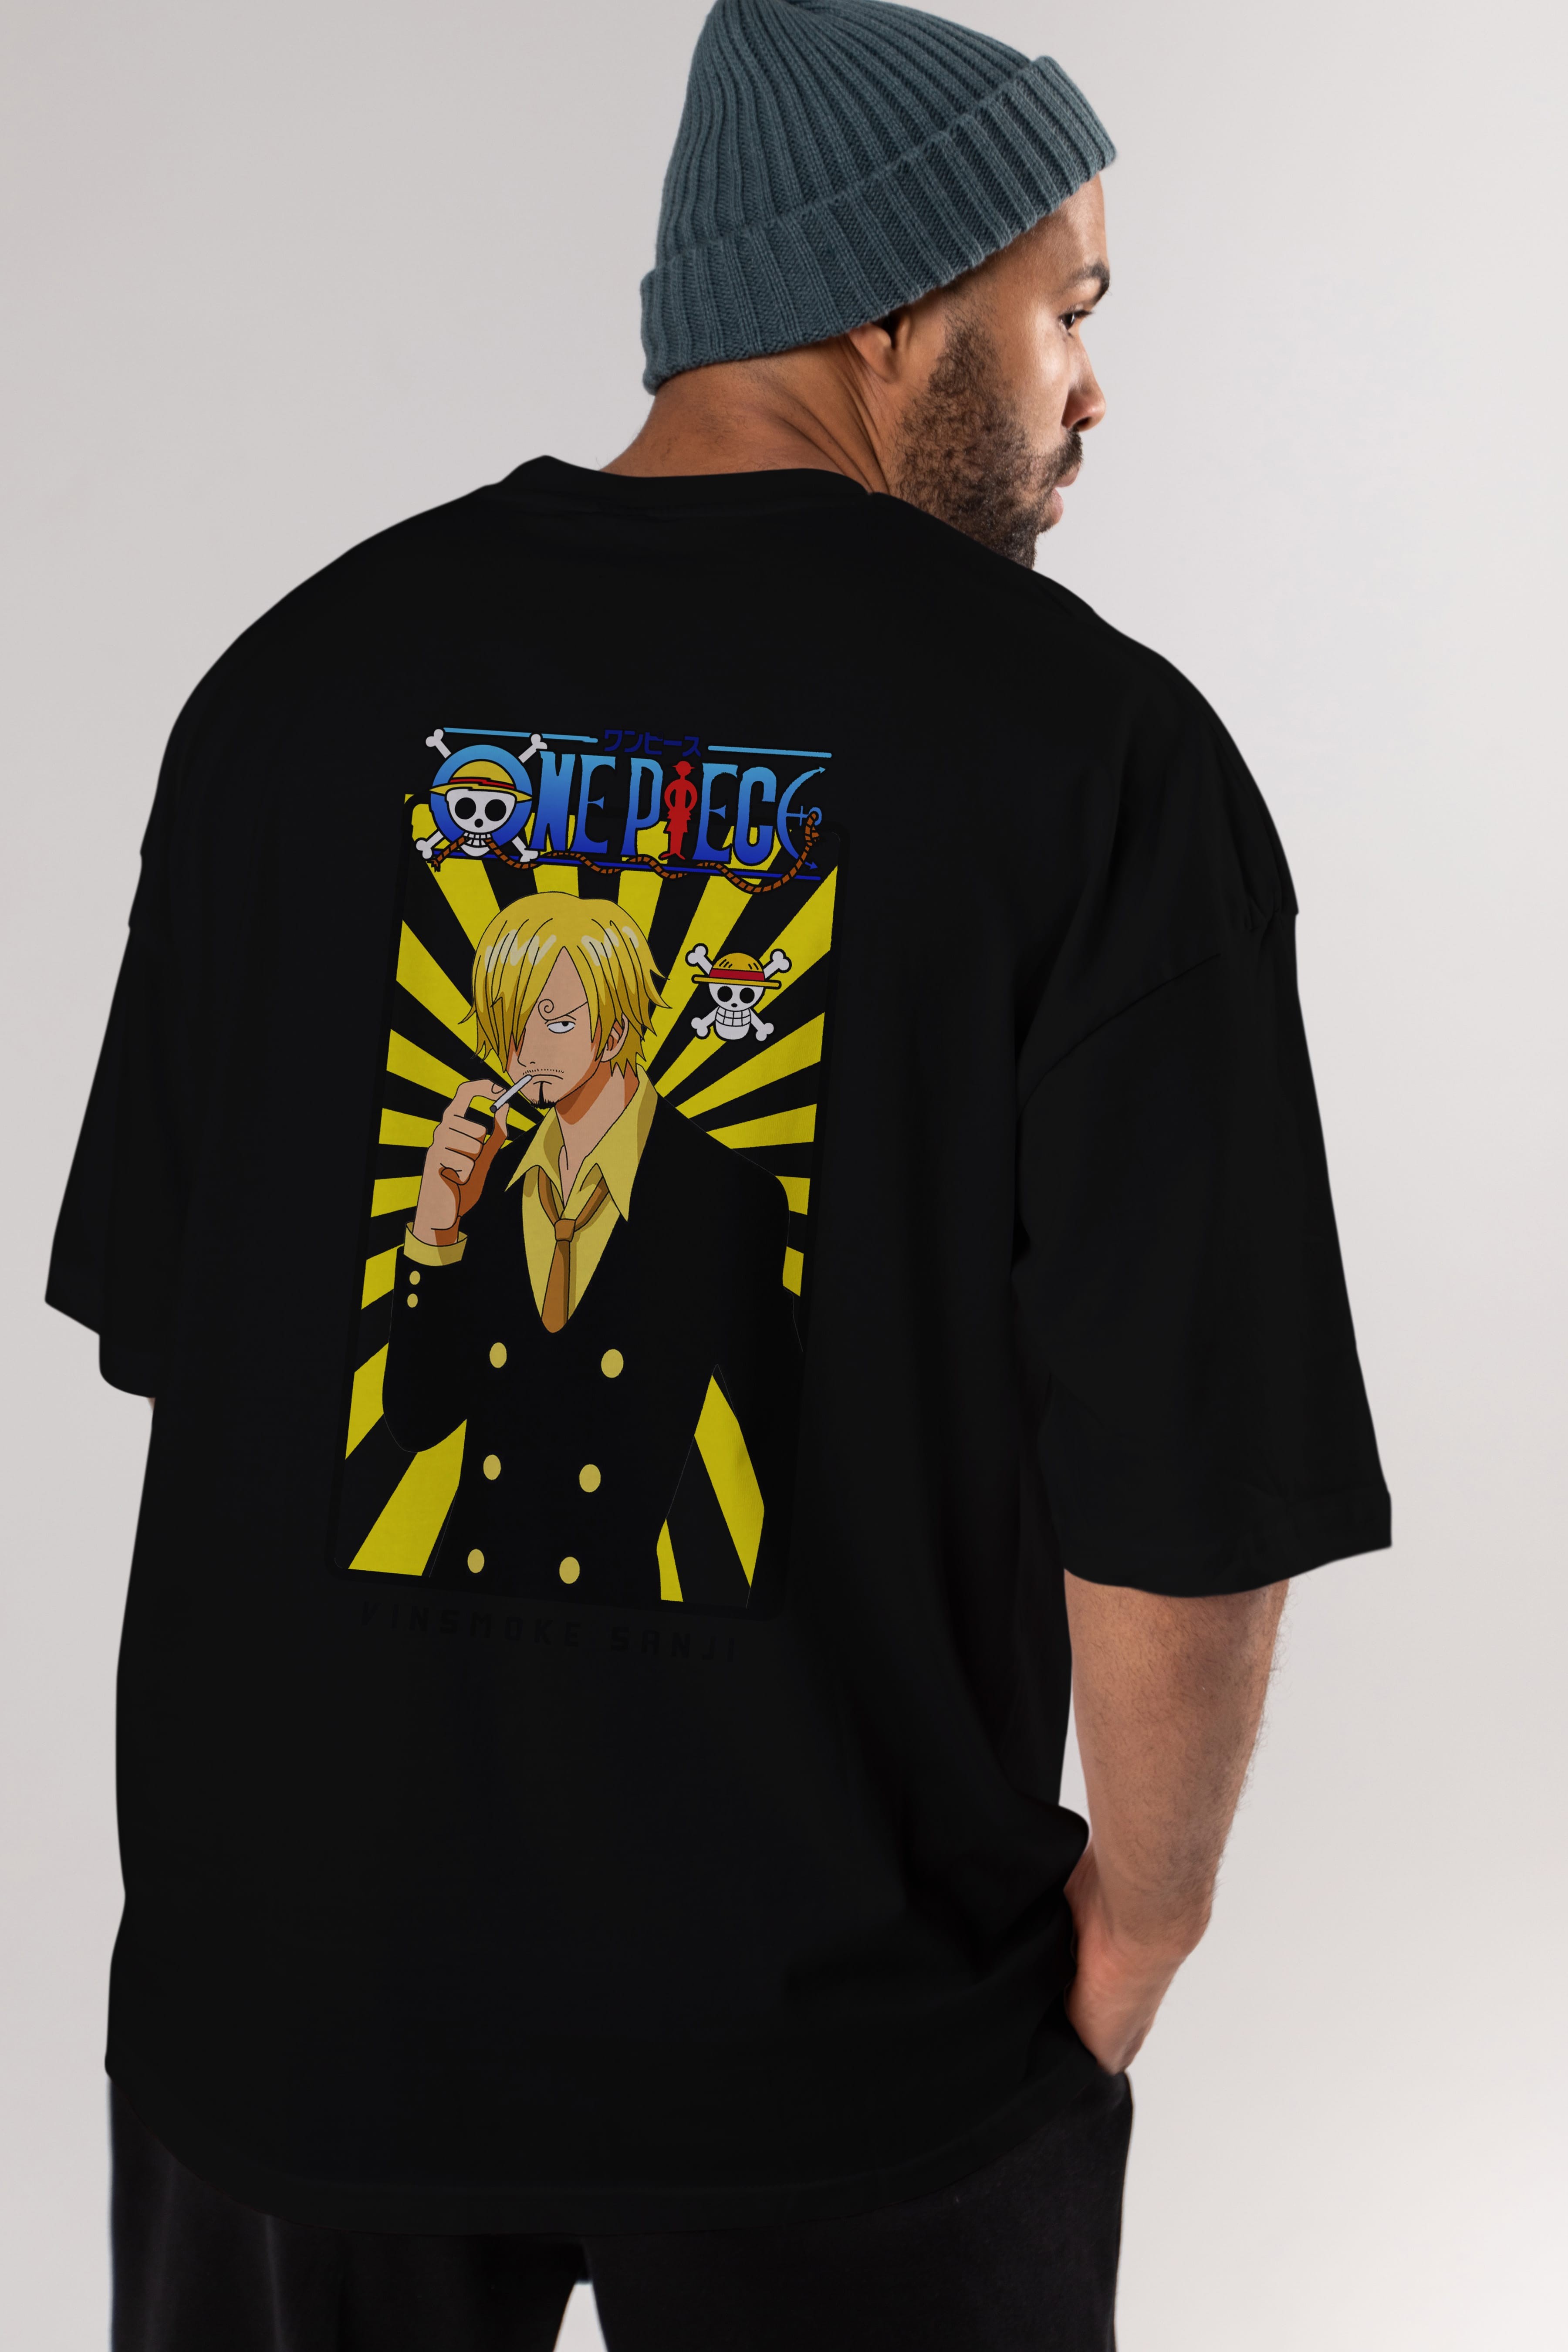 Sanji 4 Anime Arka Baskılı Oversize t-shirt Erkek Kadın Unisex %100 pamuk tişort